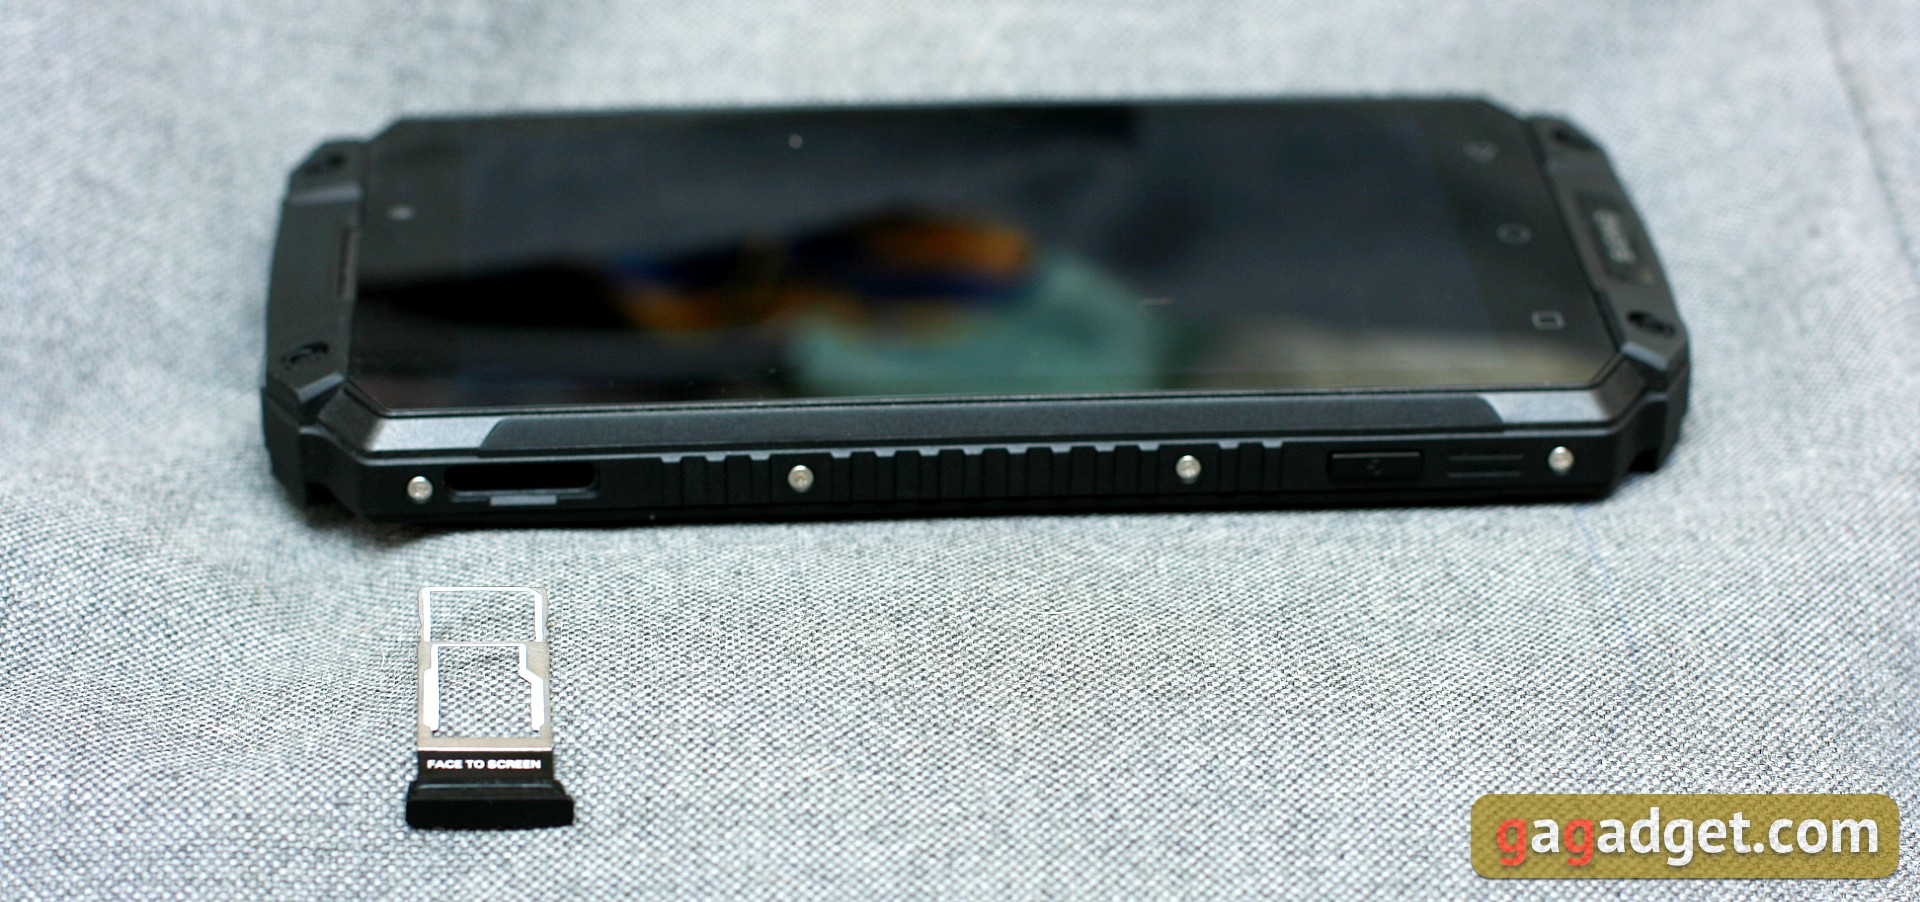 Огляд Sigma Mobile X-treme PQ39 MAX: сучасний захищений батарейкофон-8